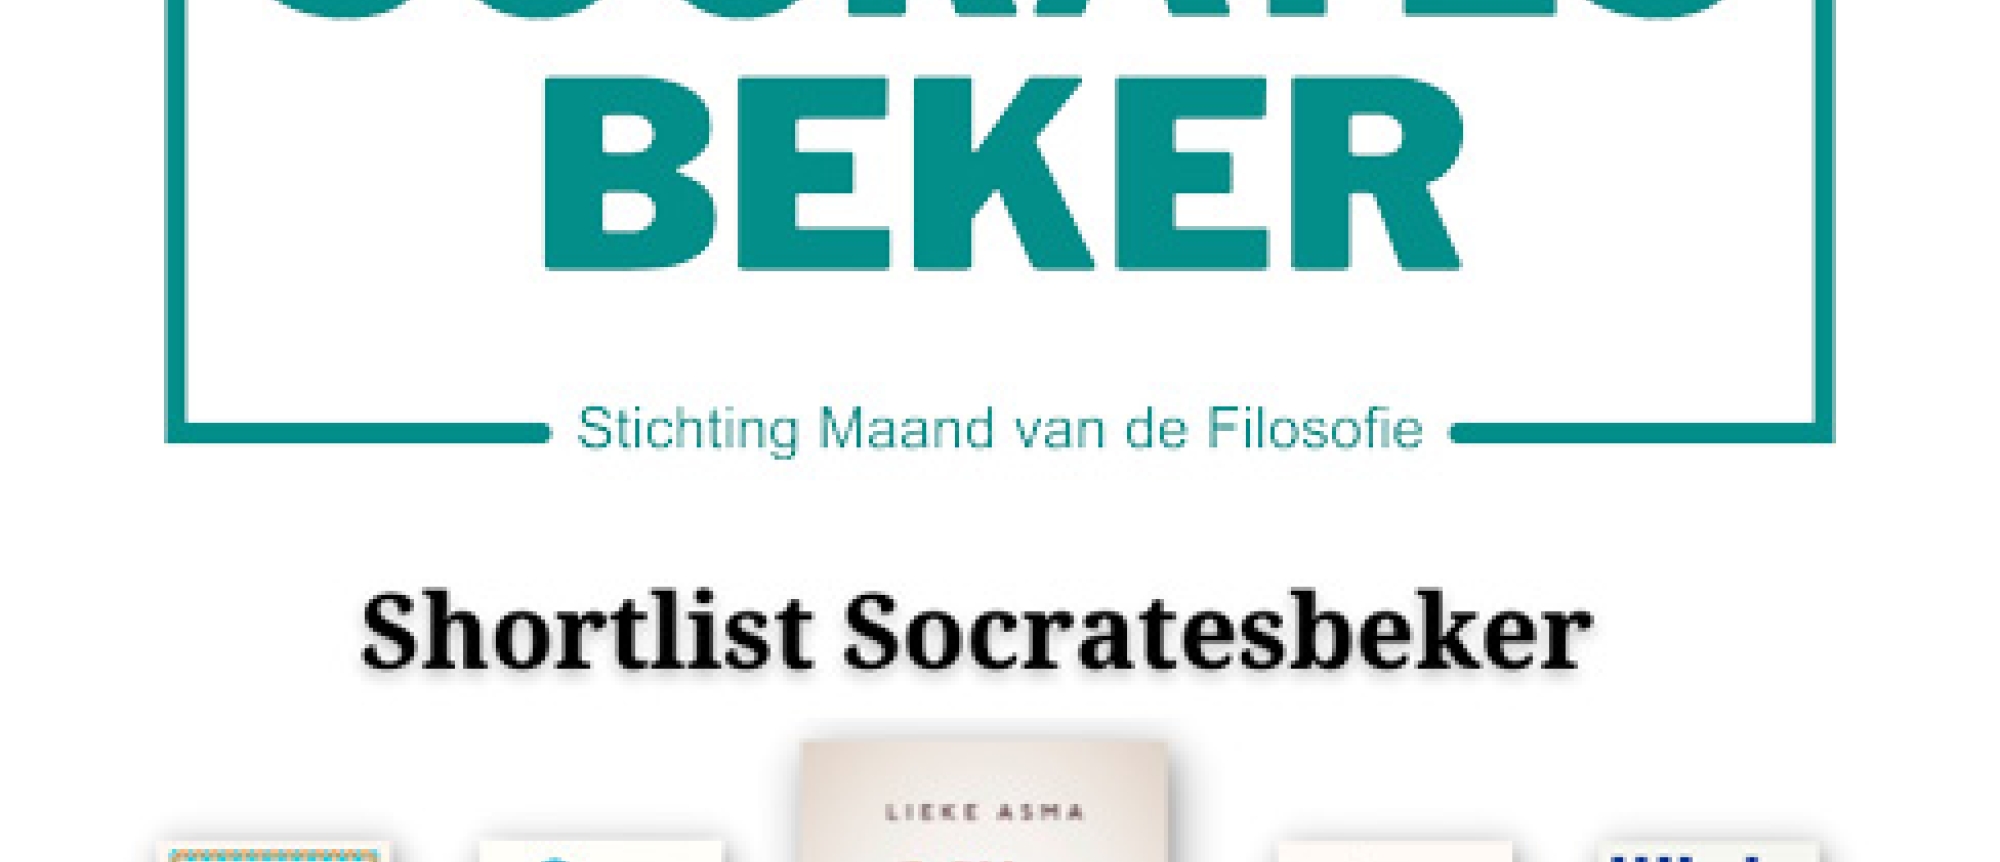 Shortlist Socratesbeker